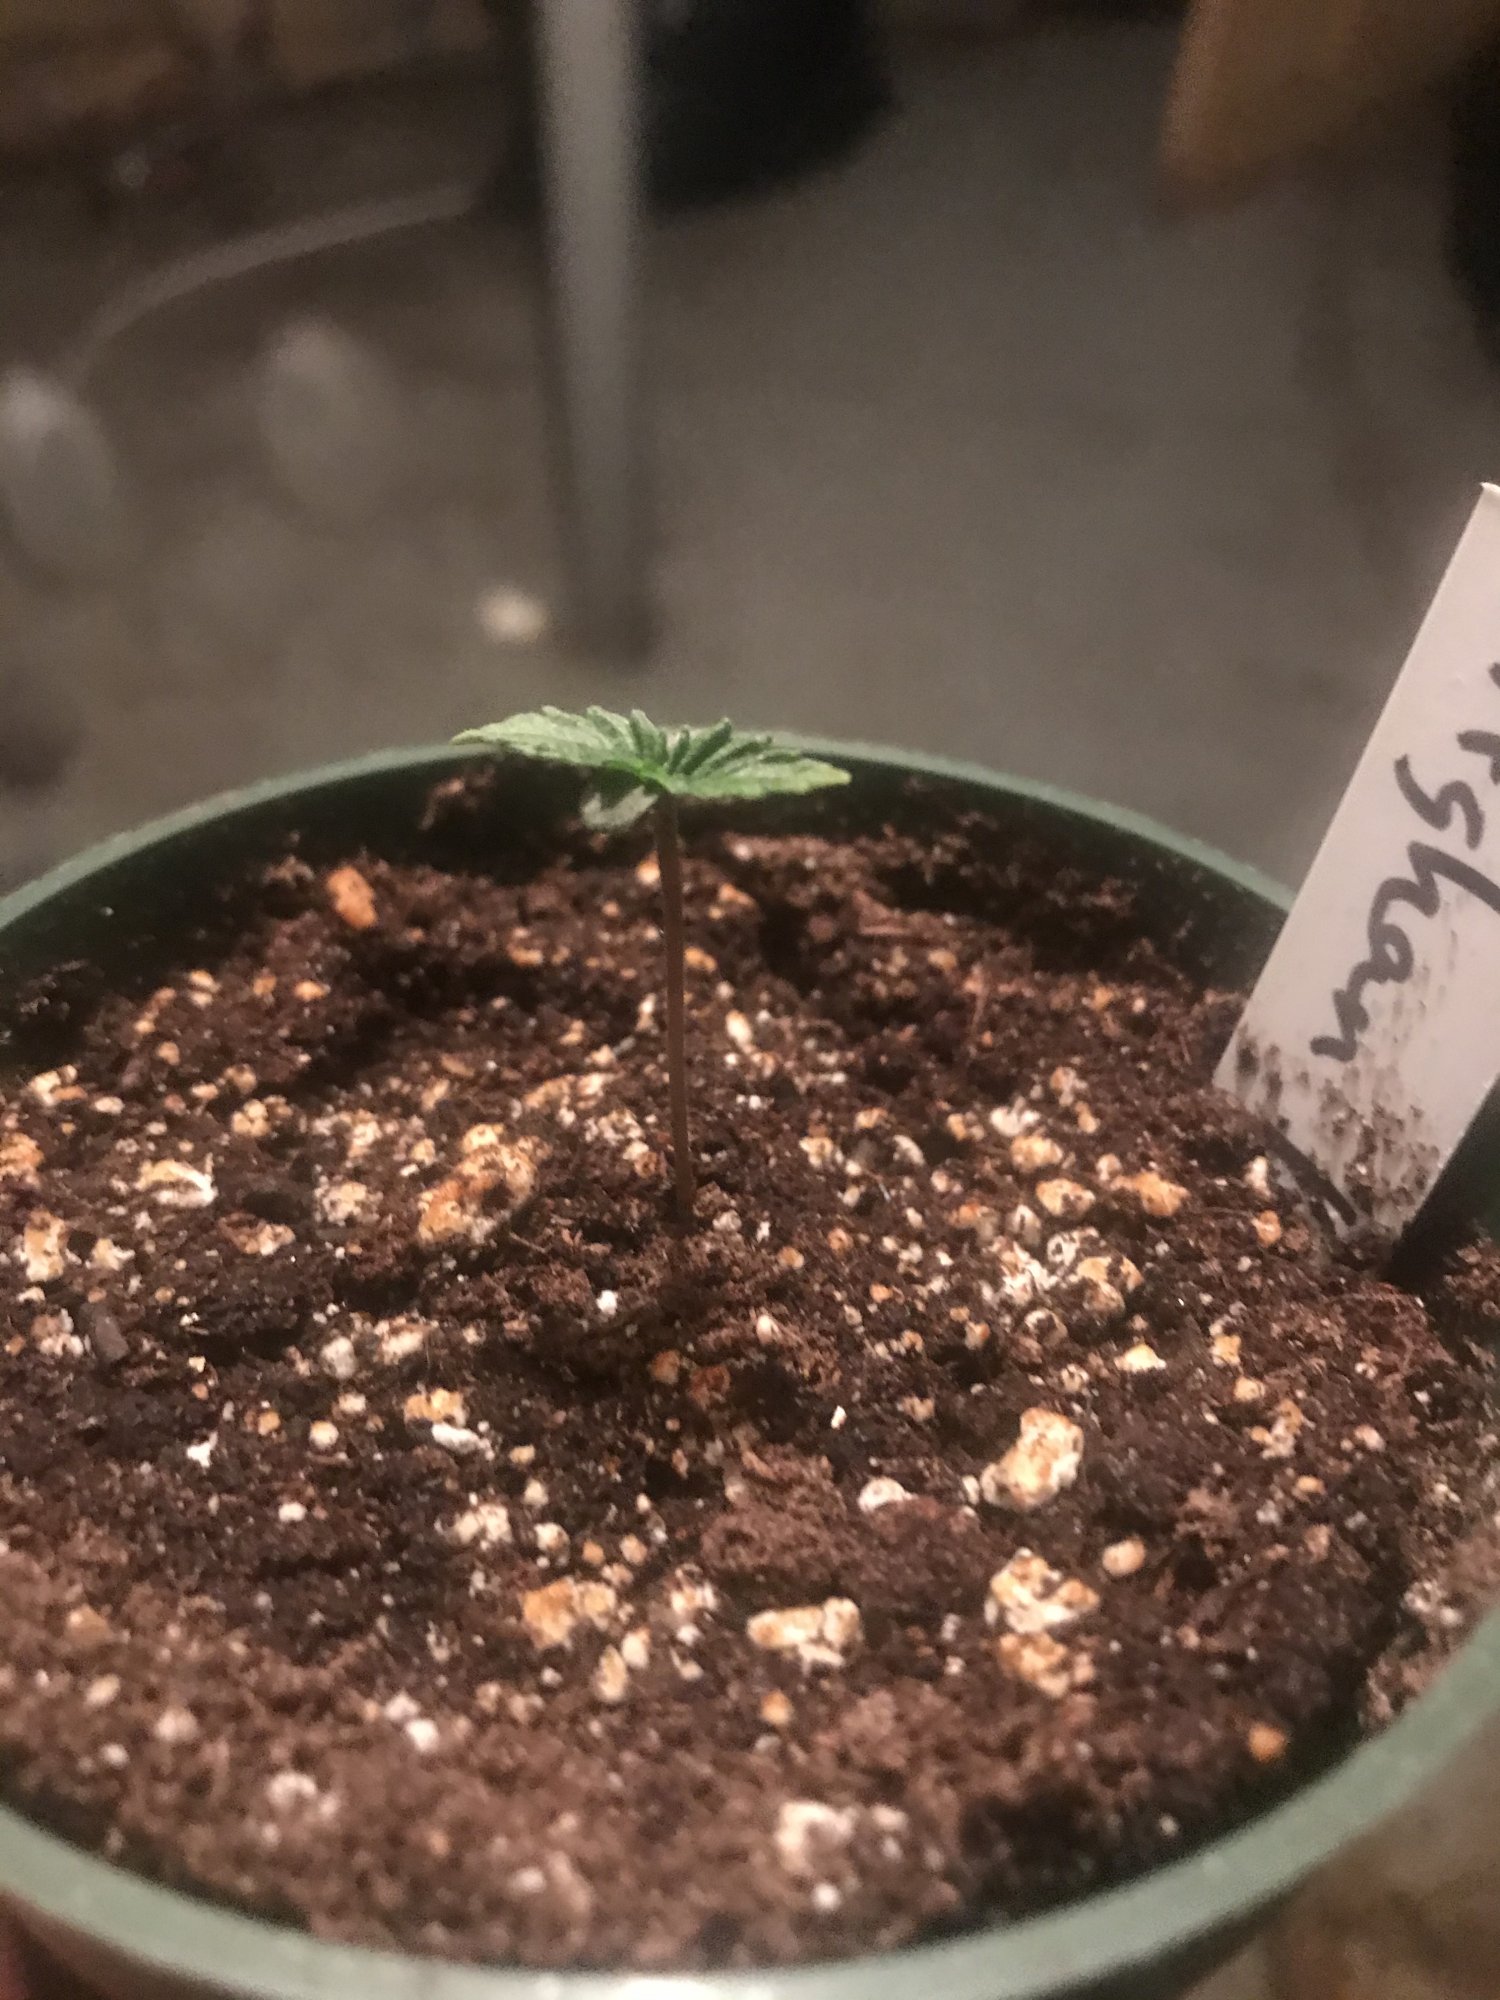 Help with seedlings